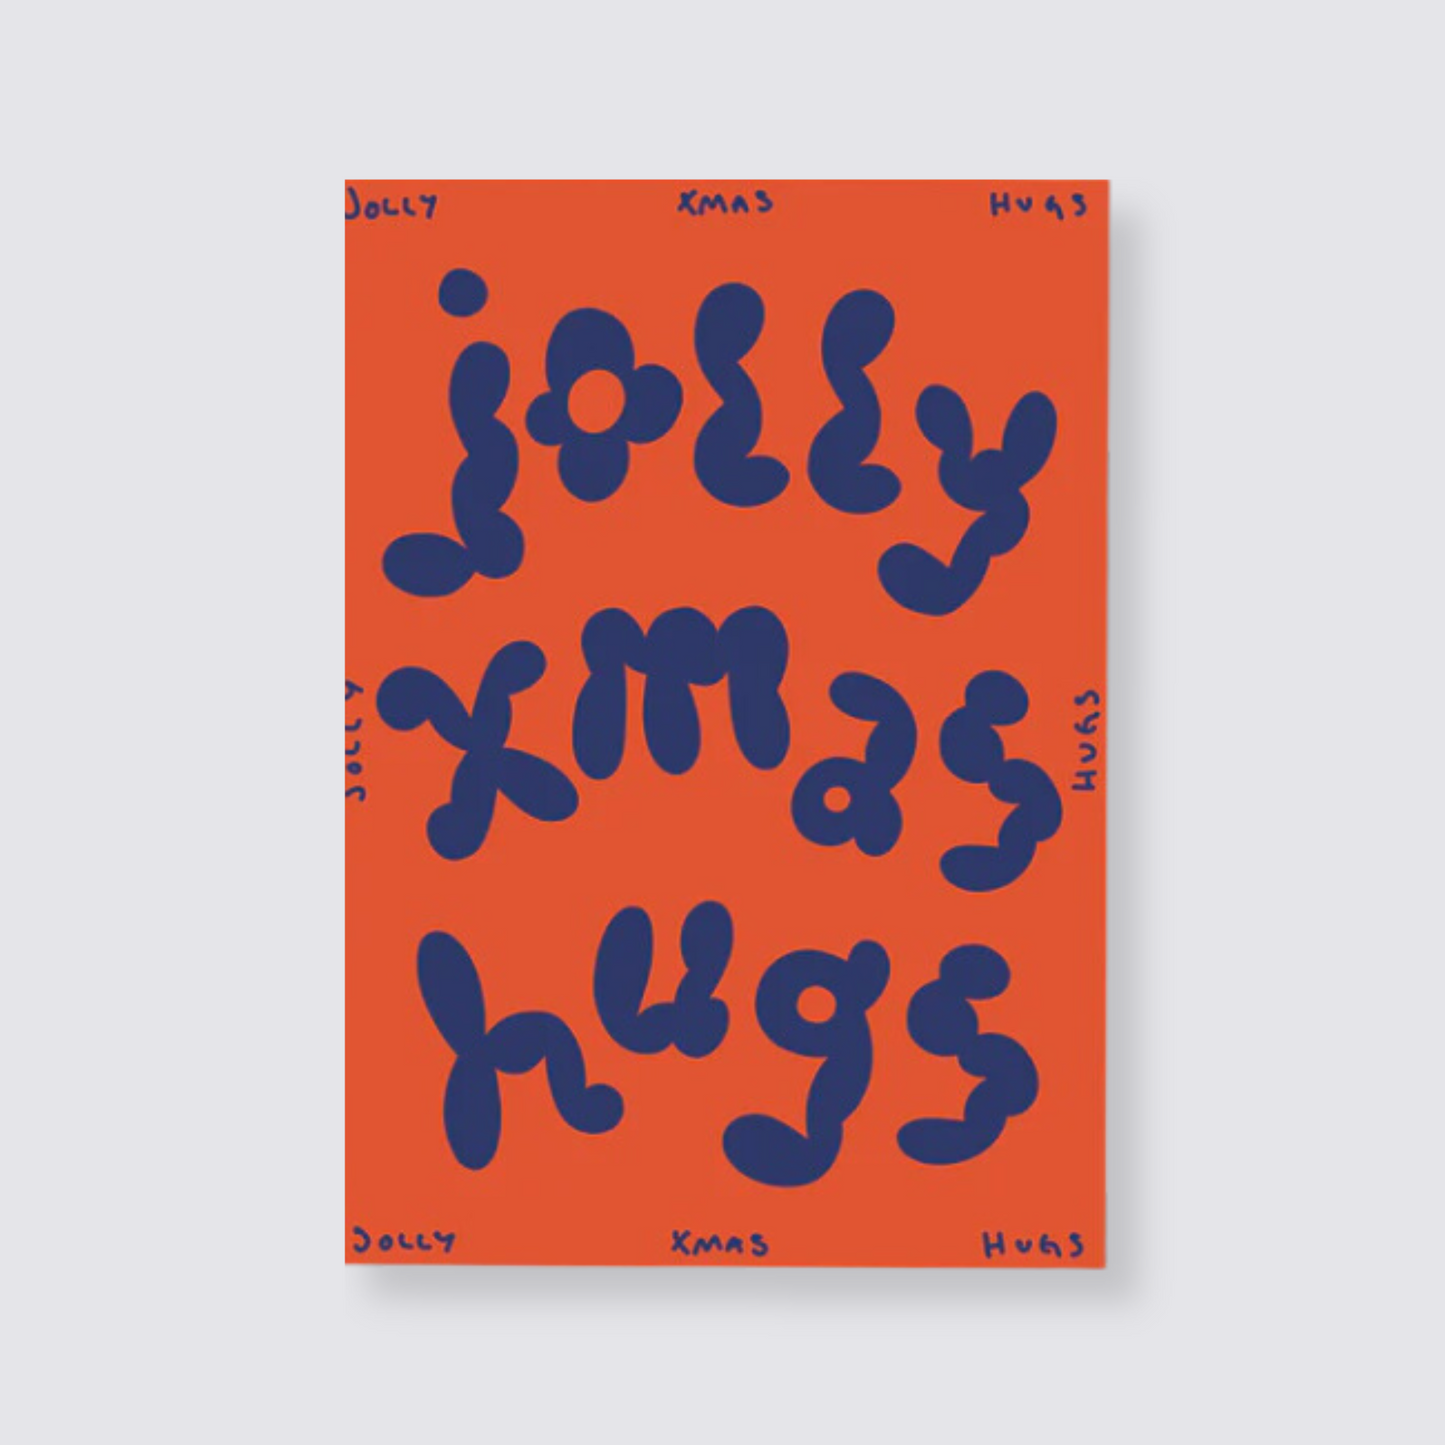 Jolly Xmas Hugs